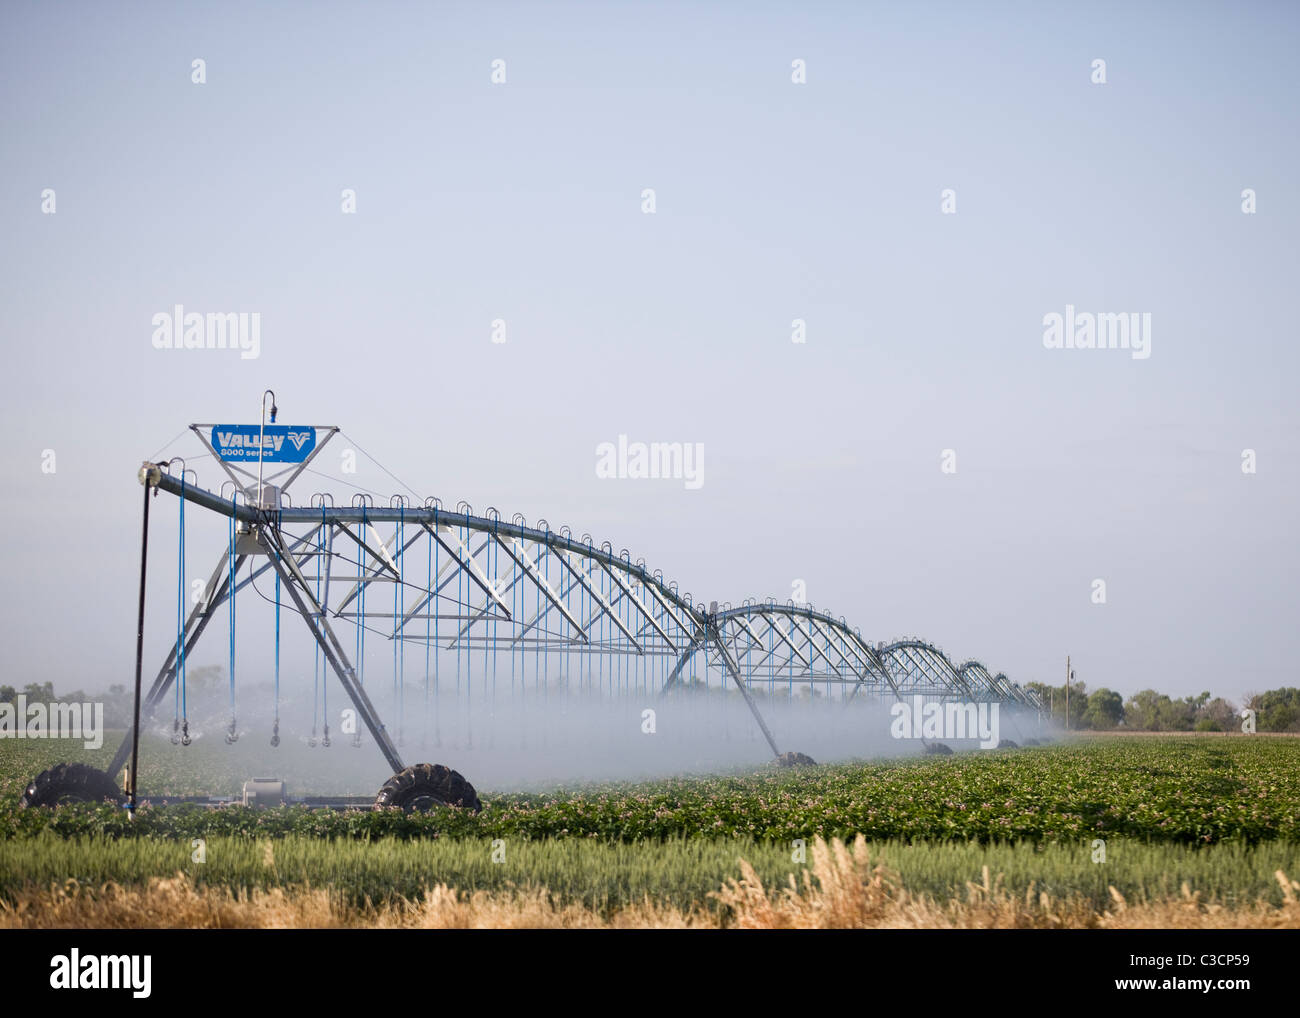 Système d'irrigation des cultures agricoles Banque D'Images